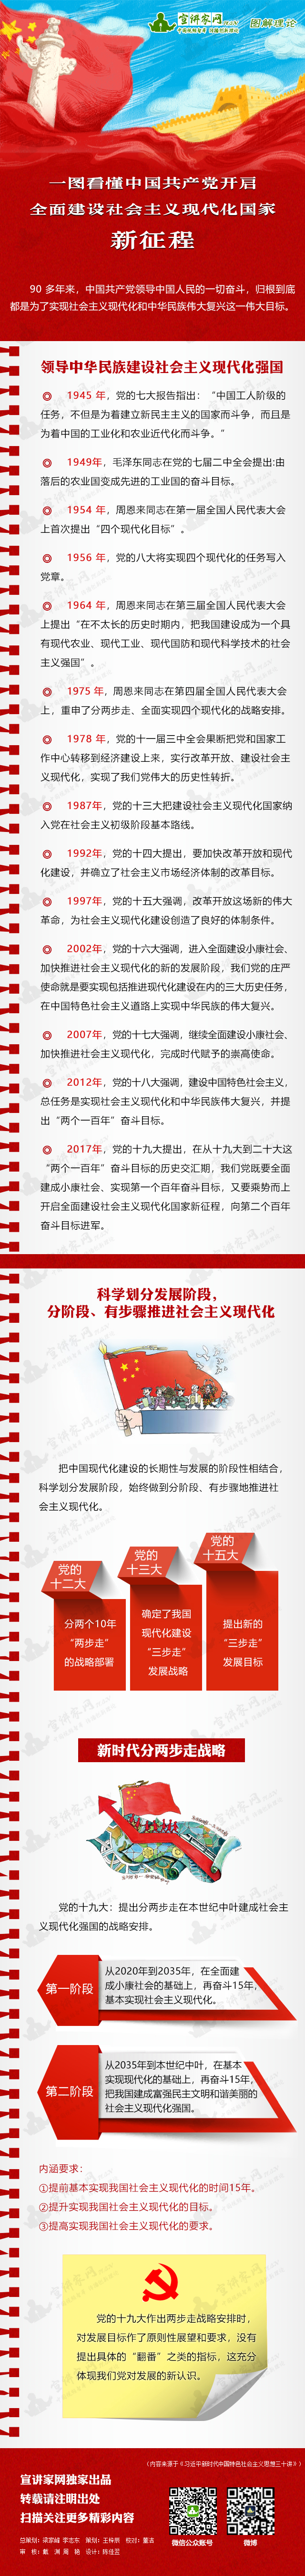 一图看懂中国共产党开启全面建设社会主义现代化国家新征程